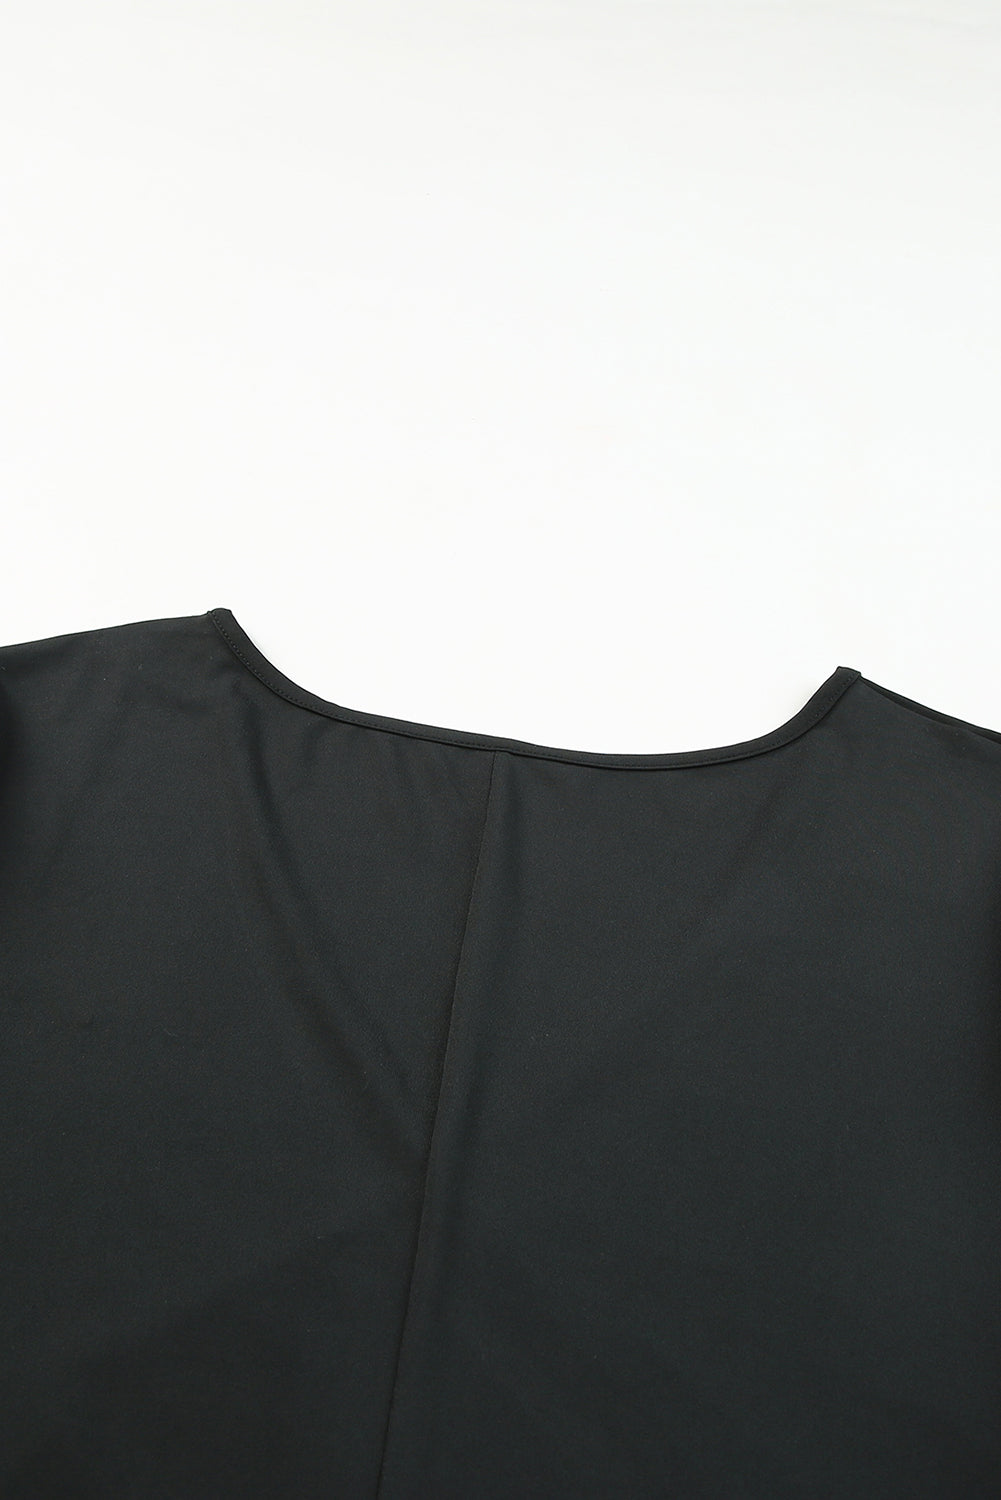 Mini-robe portefeuille froncée à manches courtes grande taille noire